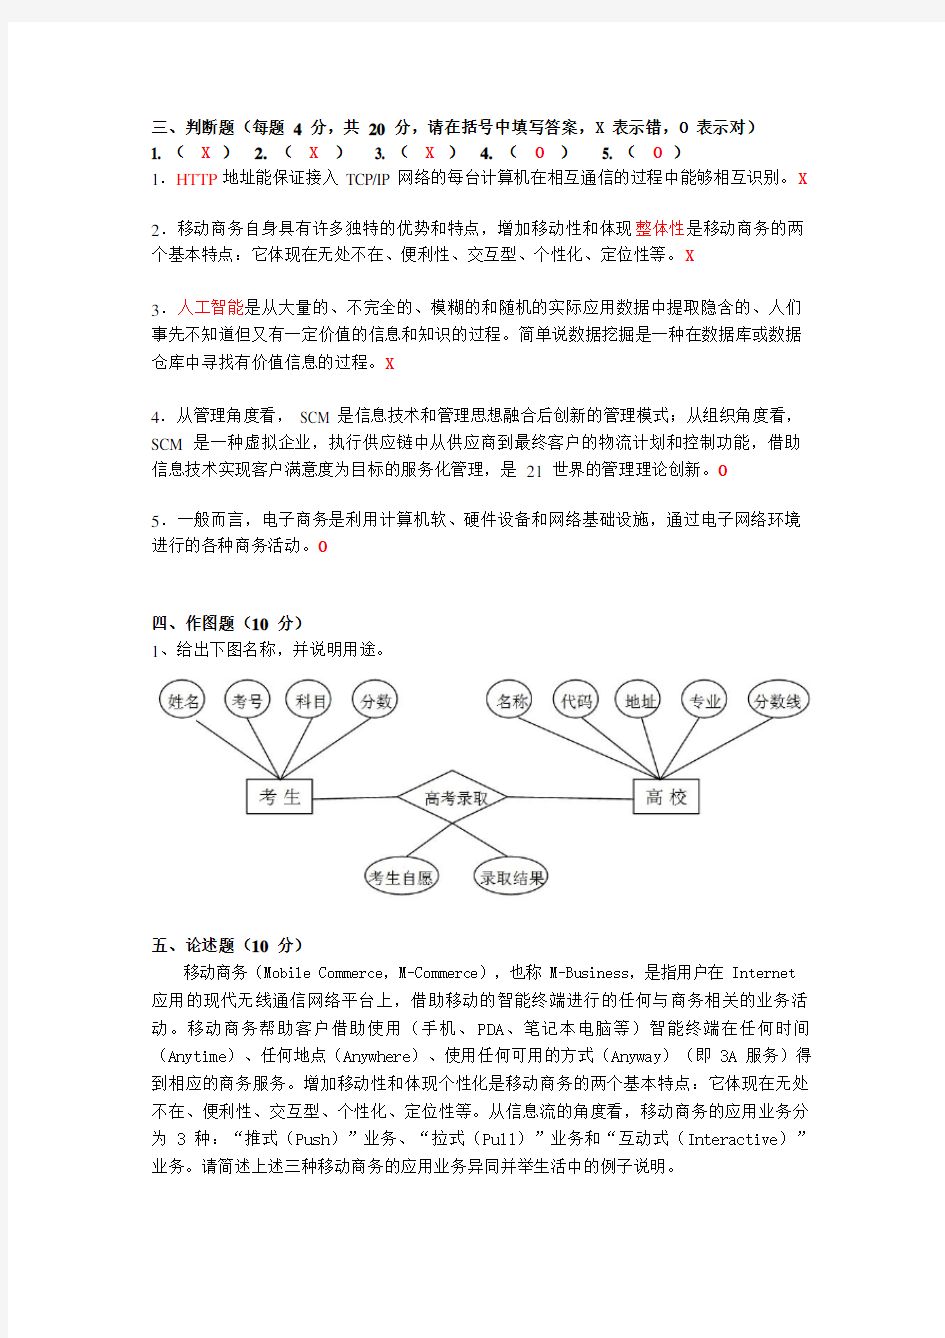 上海交通大学继续教育学院网络教育试题(模拟)